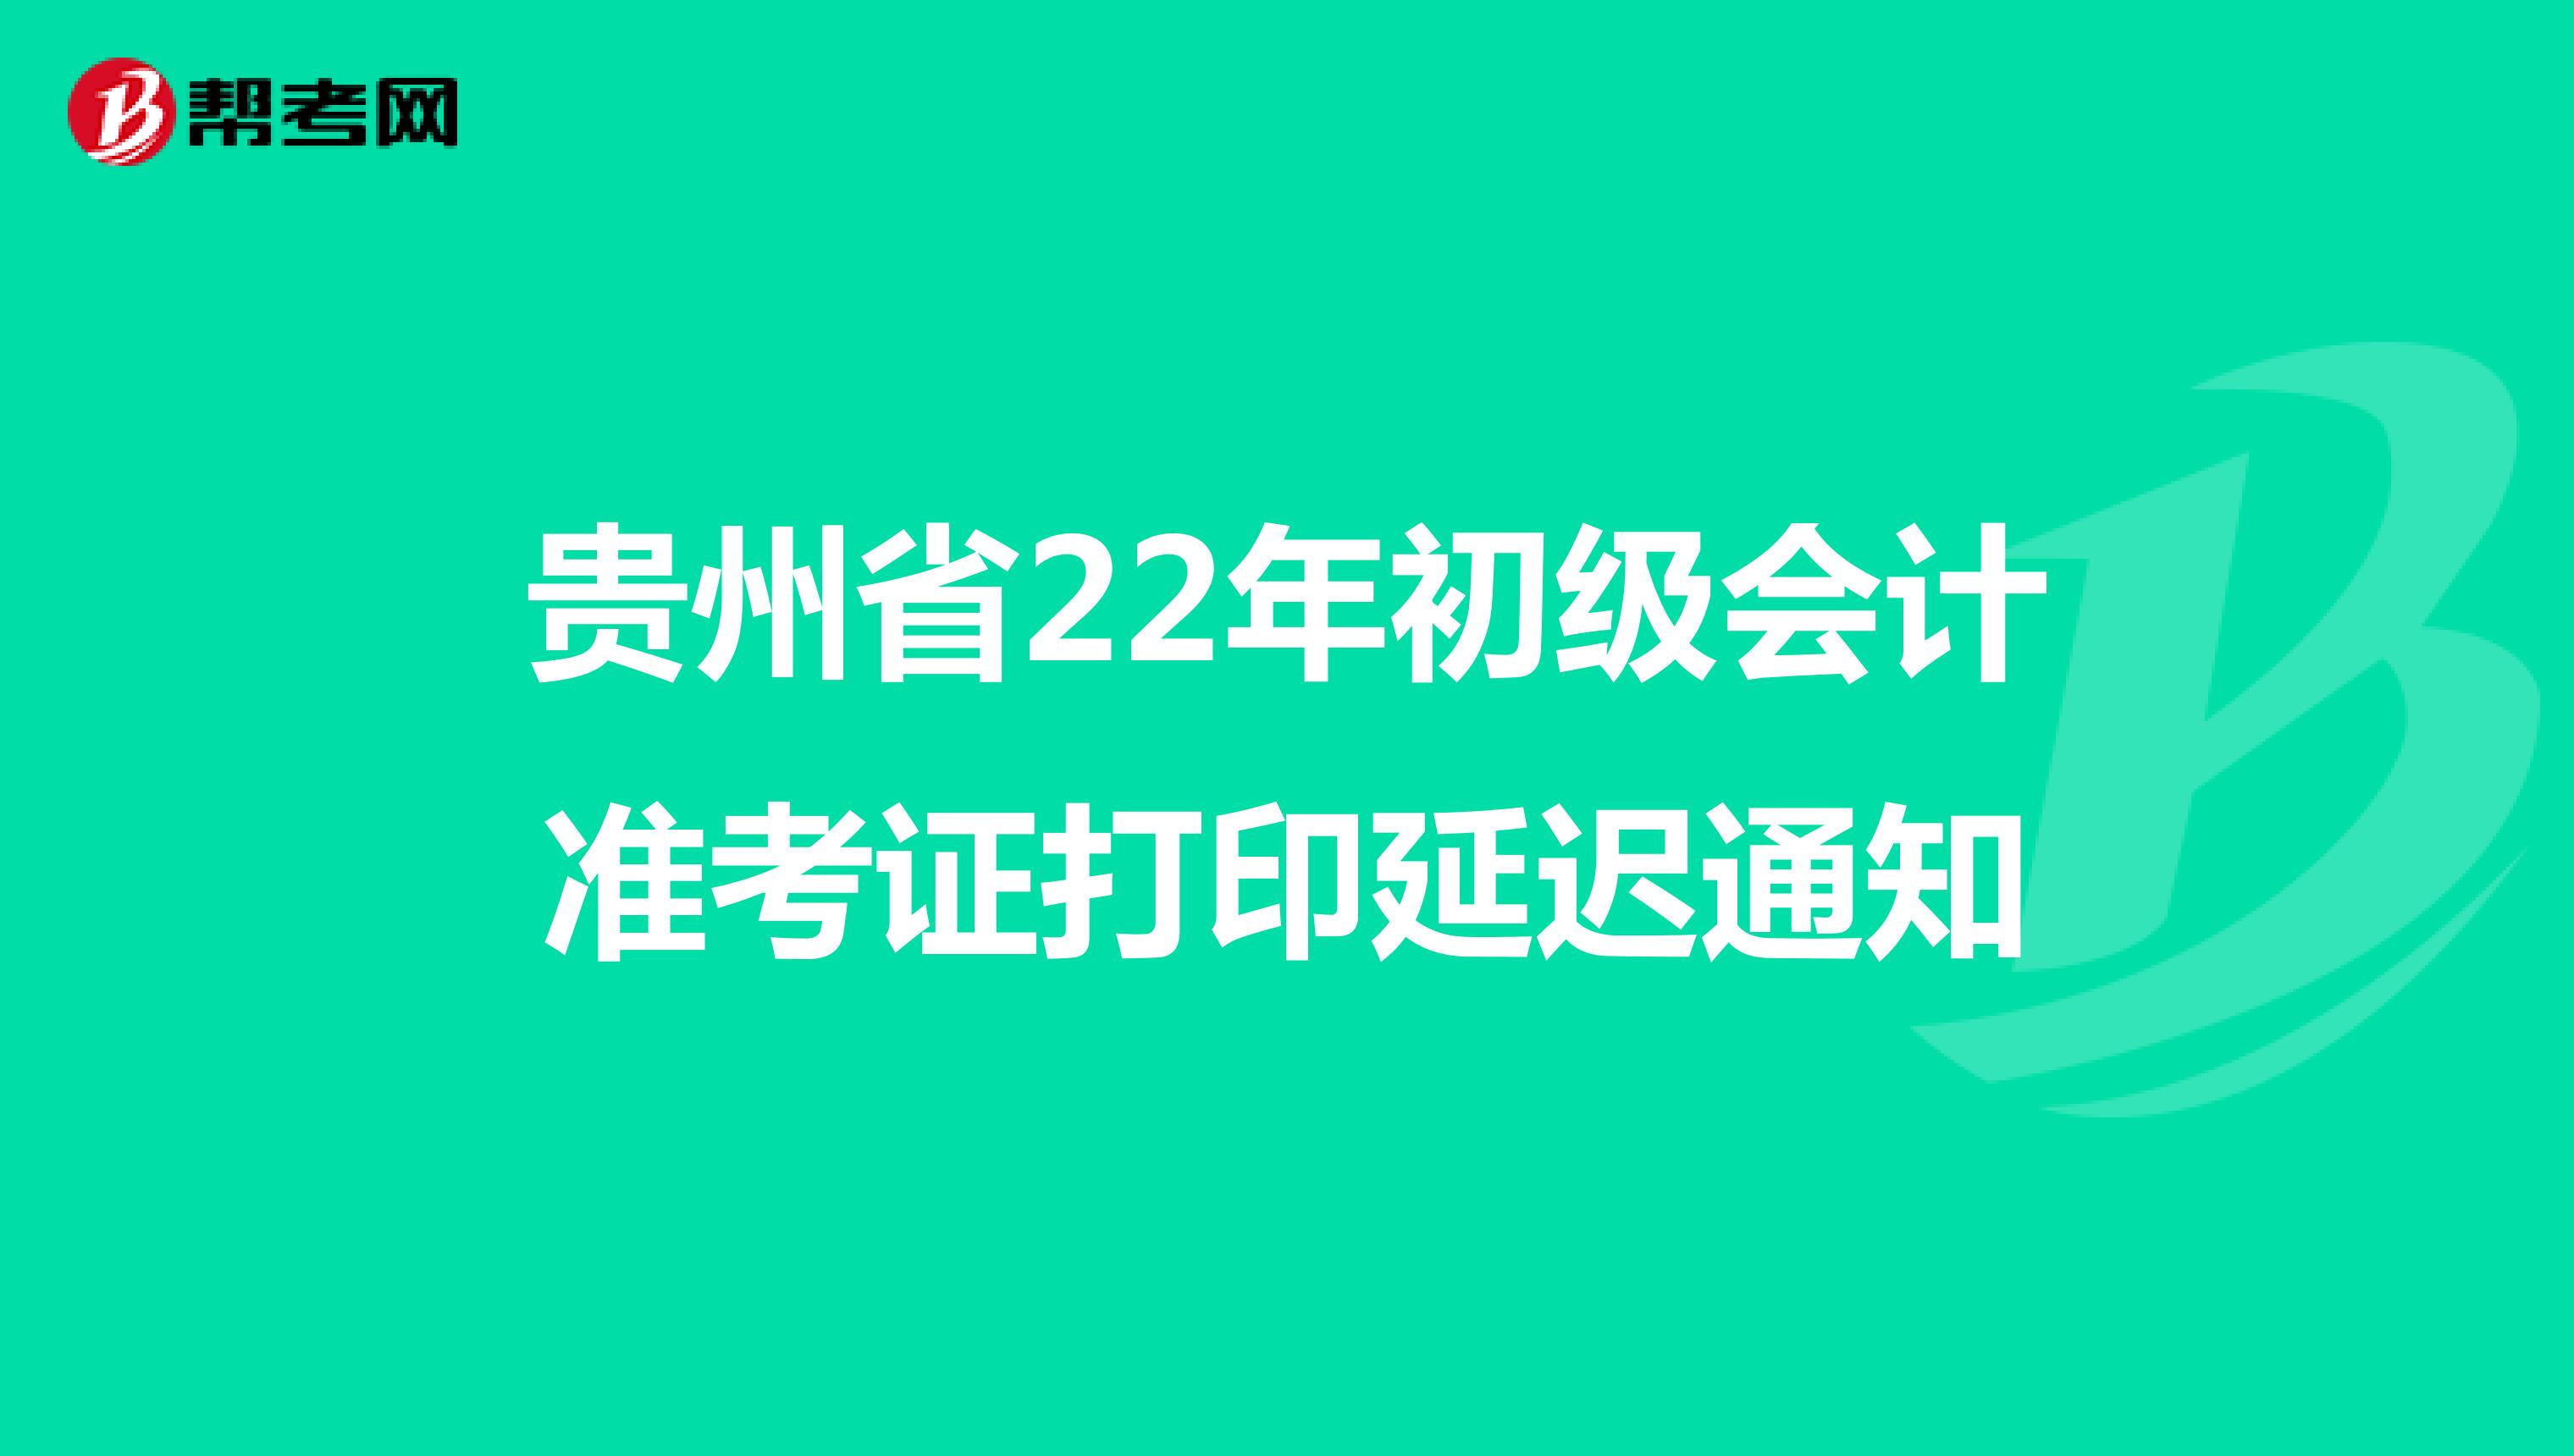 贵州省22年初级会计准考证打印延迟通知